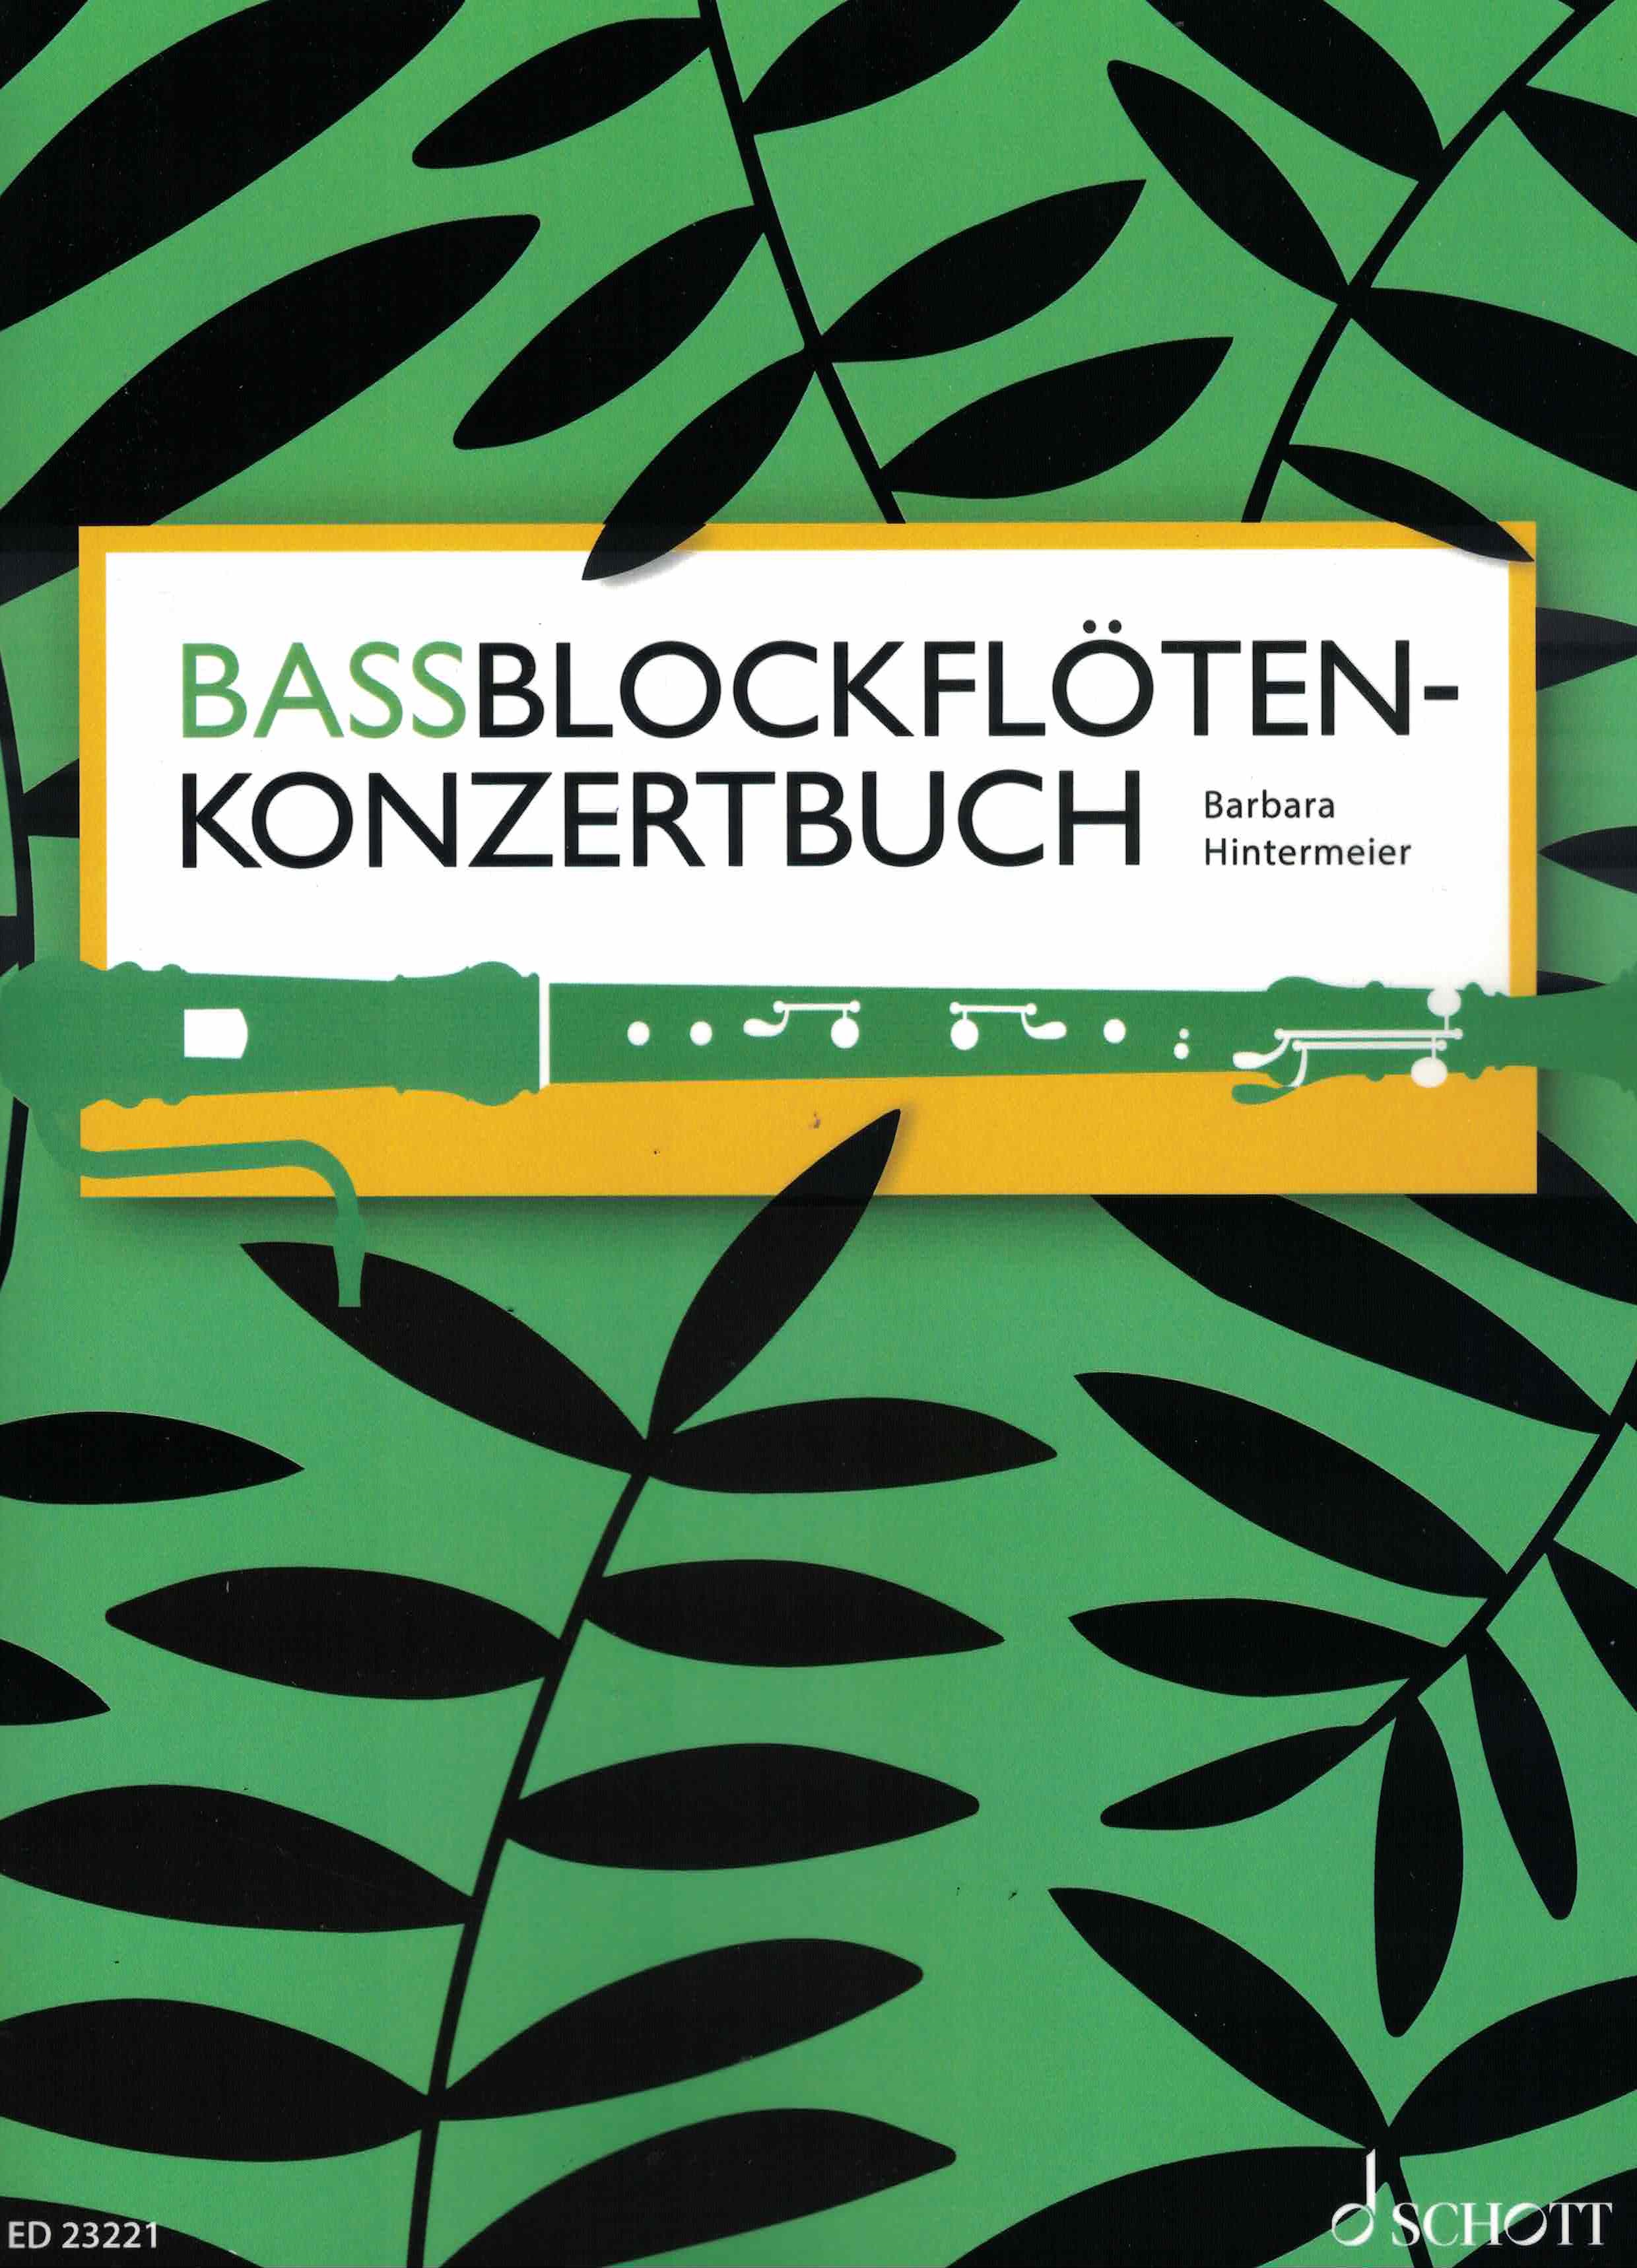 Bassblockflötenkonzertbuch, Barbara Hintermeier